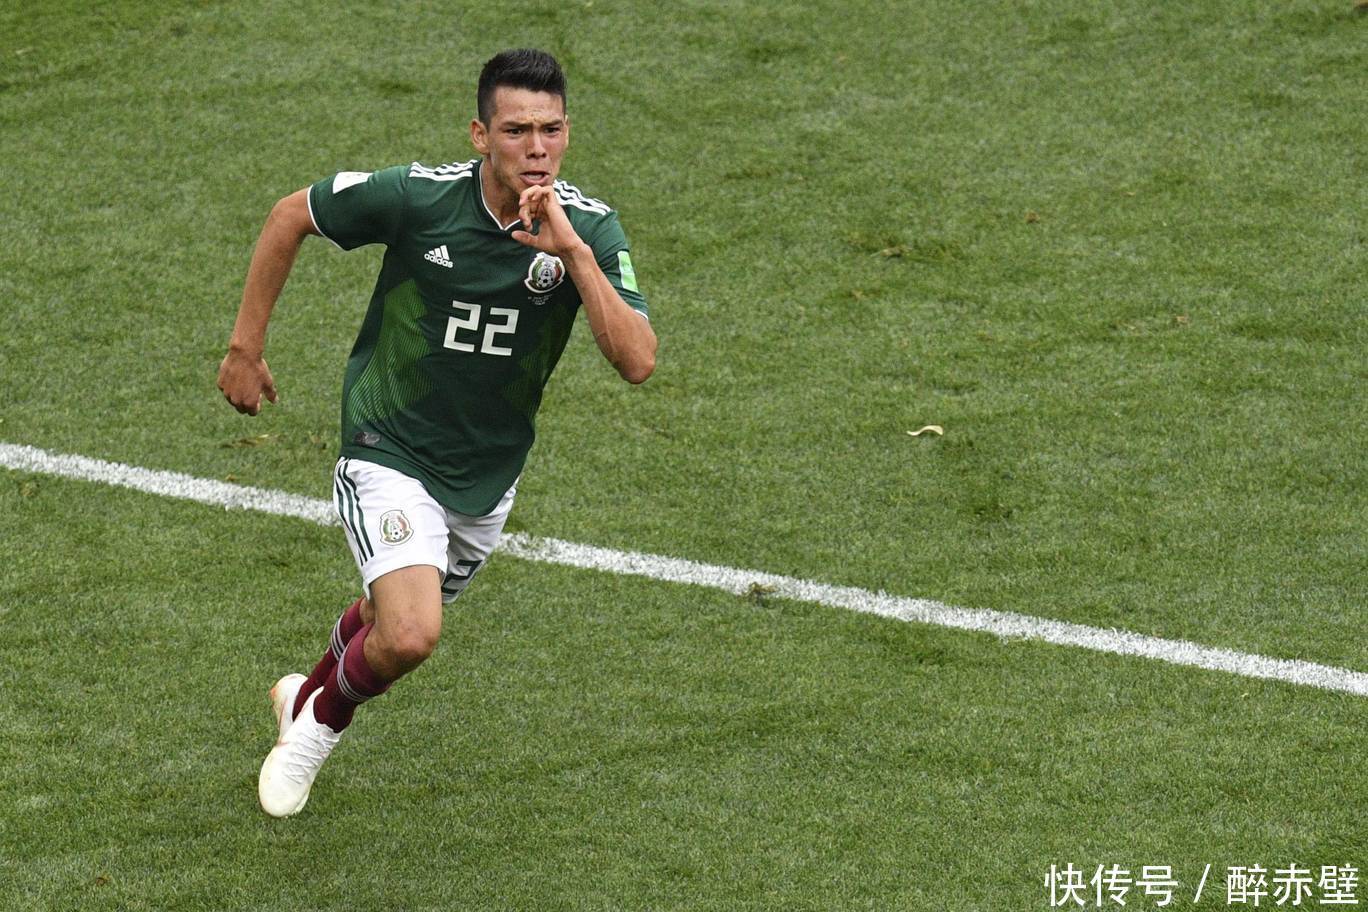 2018年世界杯:墨西哥通过揭露他们的后卫和骚